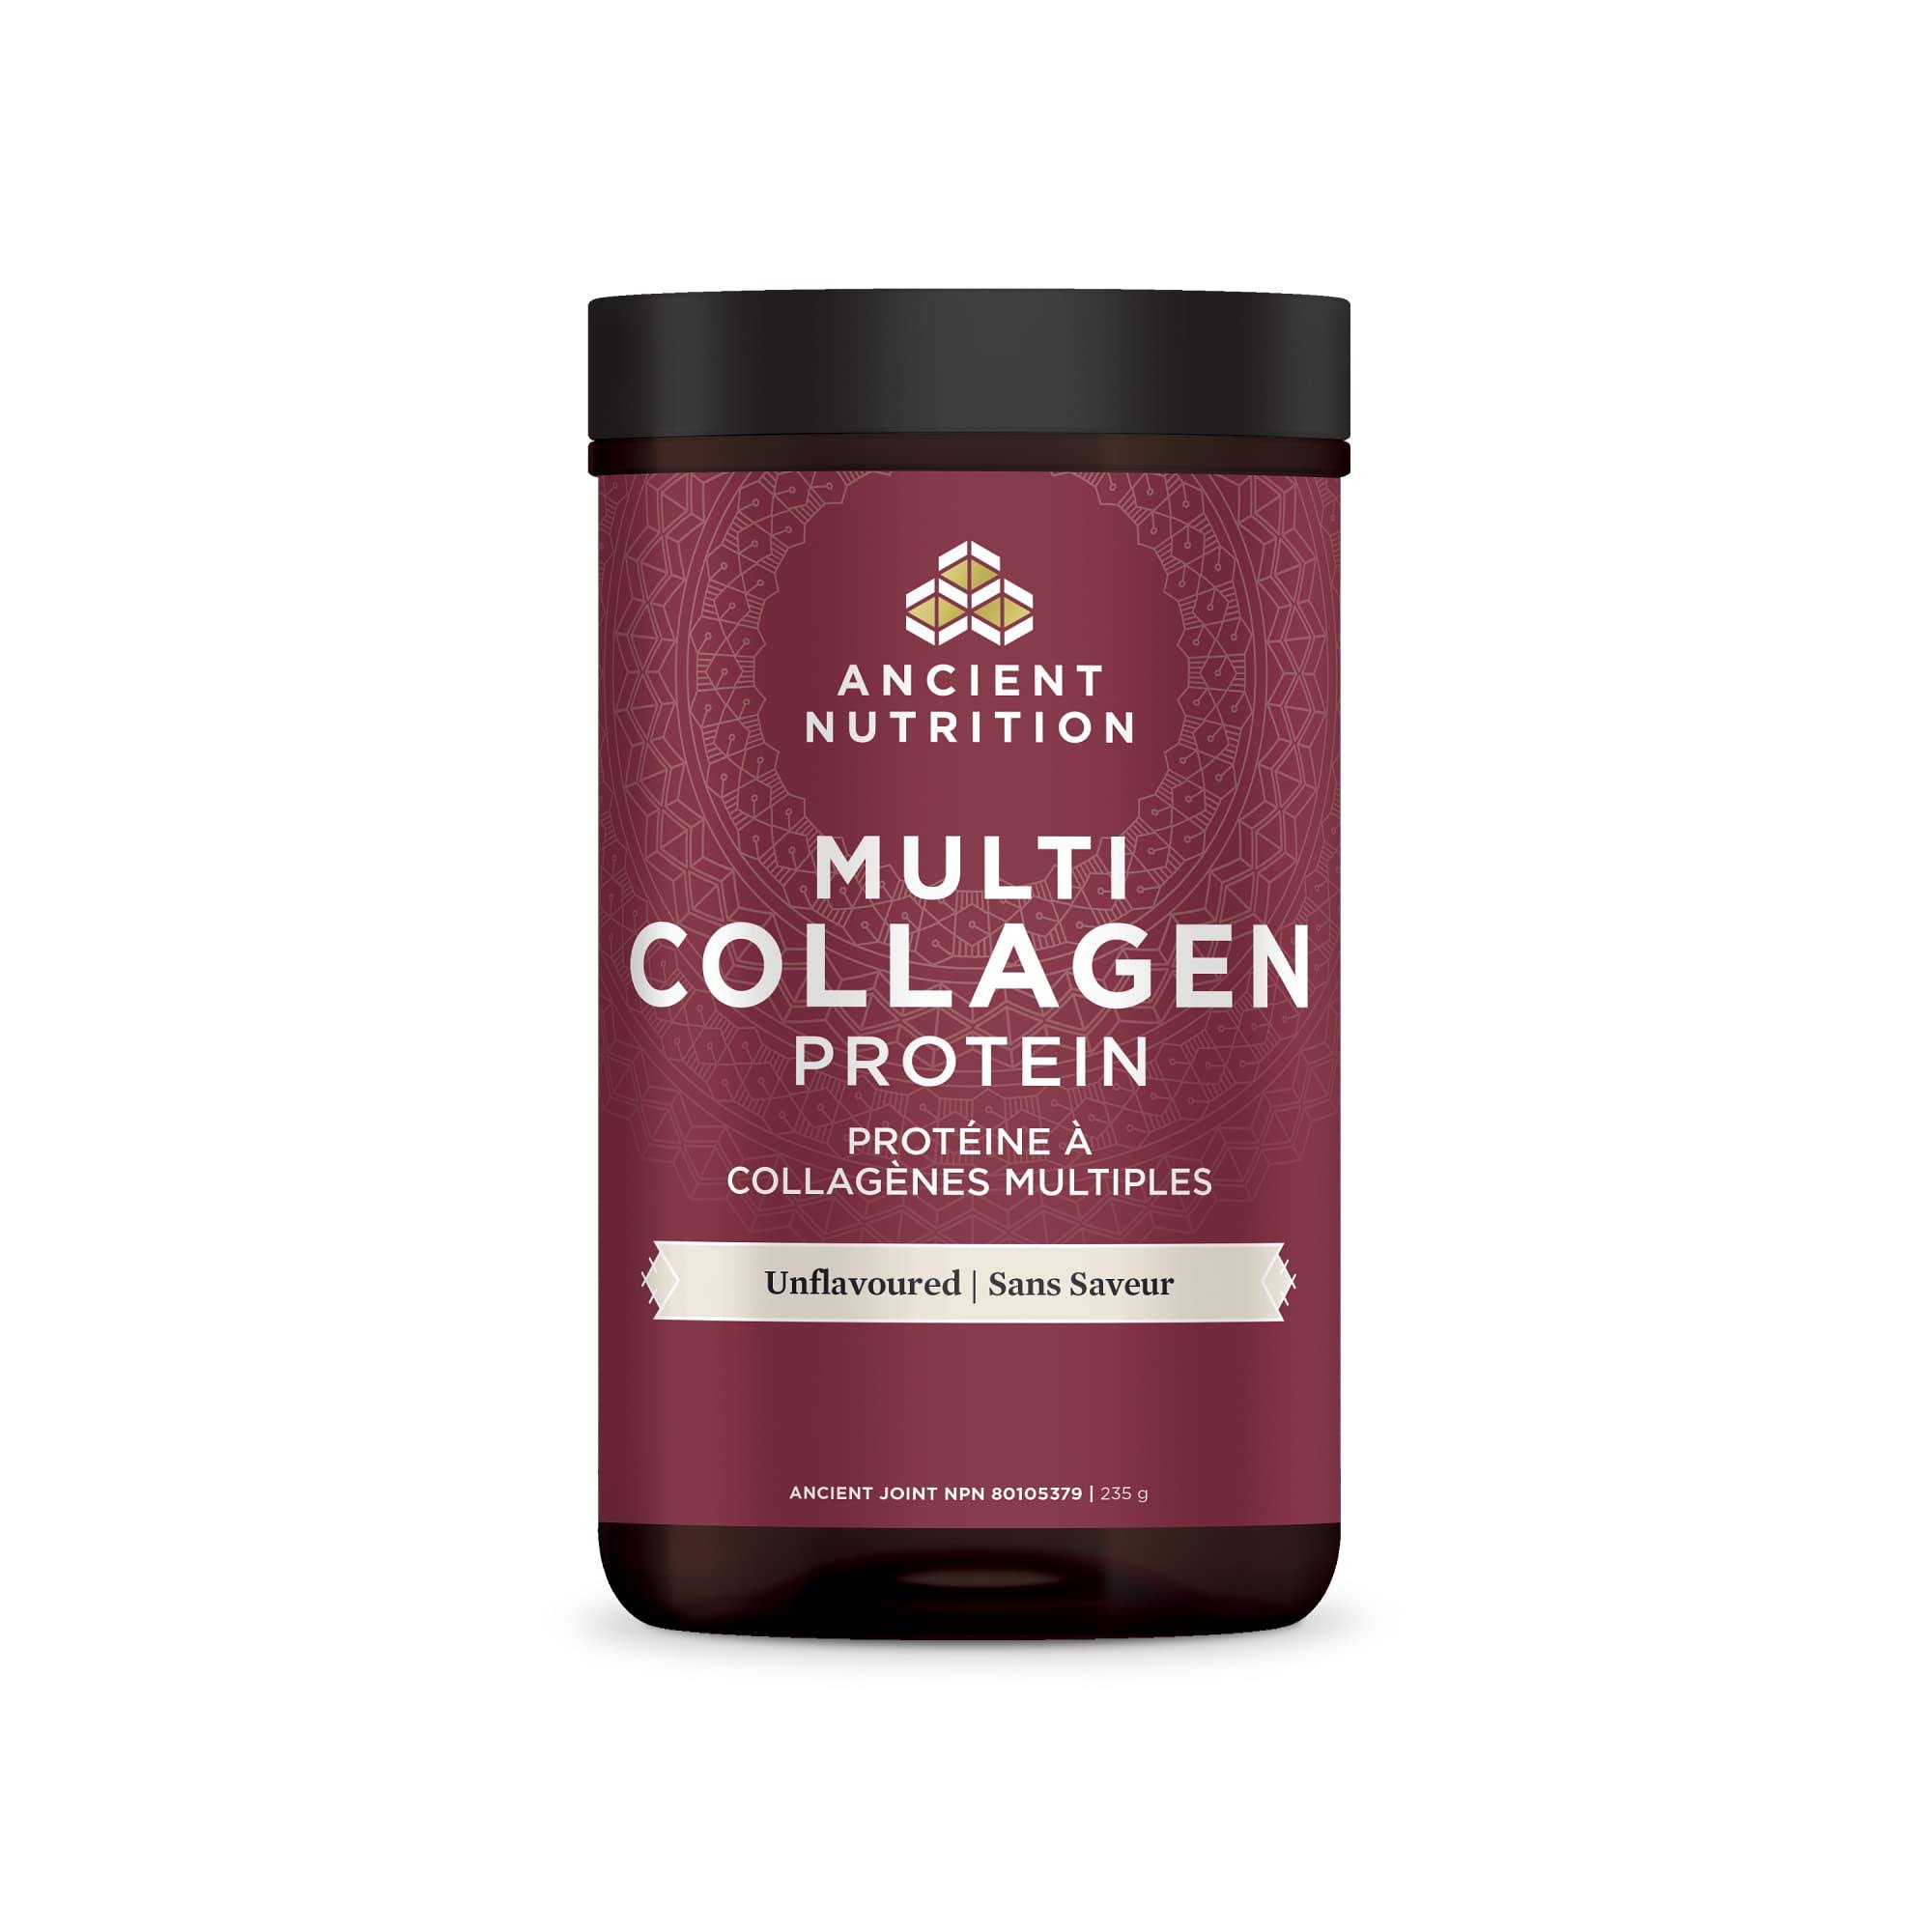 Ancient Nutrition Multi Collagen Protein Unflavoured 235g